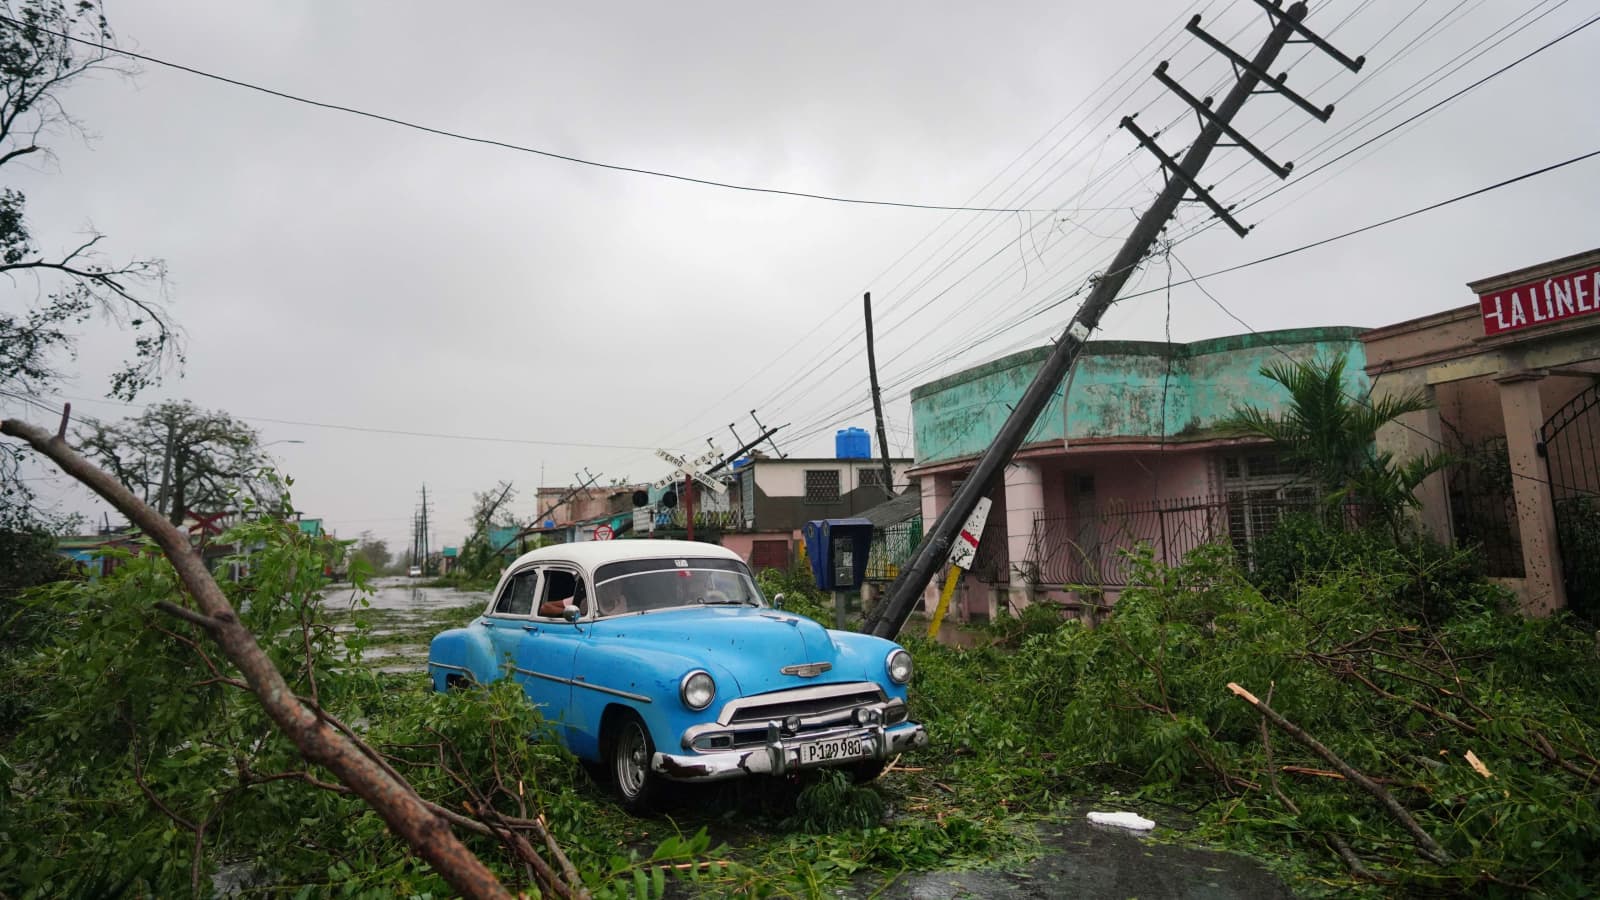 Hình ảnh bão Ian gây thiệt hại đáng kể ở Cuba. Tỉnh Pinar del Rio đã phải sơ tán 40.000 người khỏi những khu vực trũng thấp gần bờ biển. Mái tôn của nhiều ngôi nhà bị thổi tung, nằm rải rác trên đường phố sau khi bão Ian đi qua.